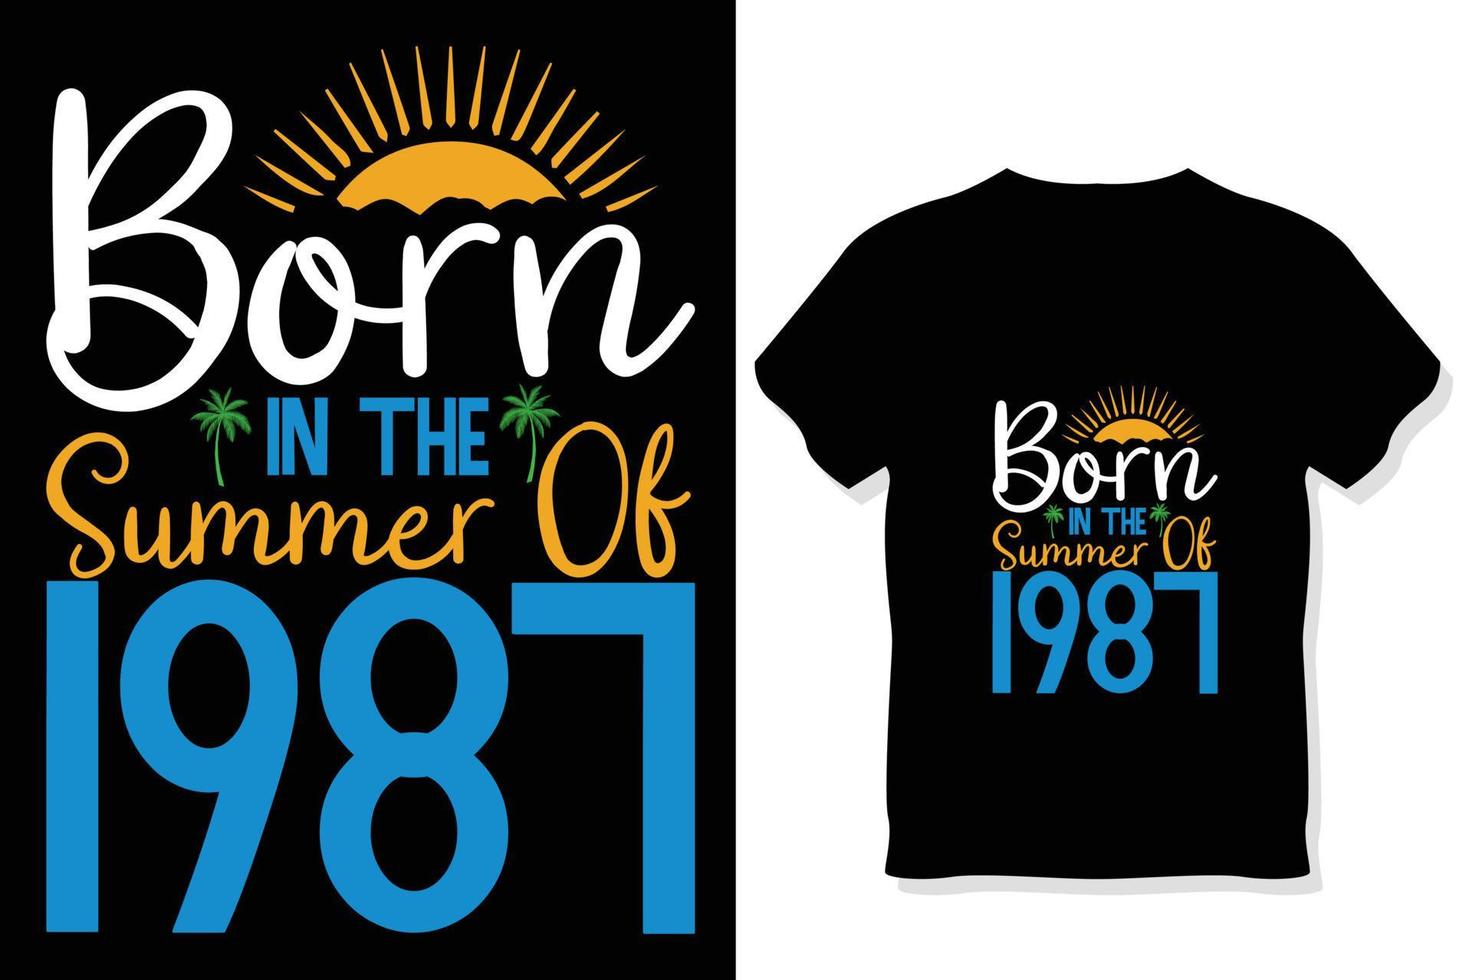 geboren in de zomer van 1987 ,zomer typografie t overhemd ontwerp, zomer citaten ontwerp belettering vector